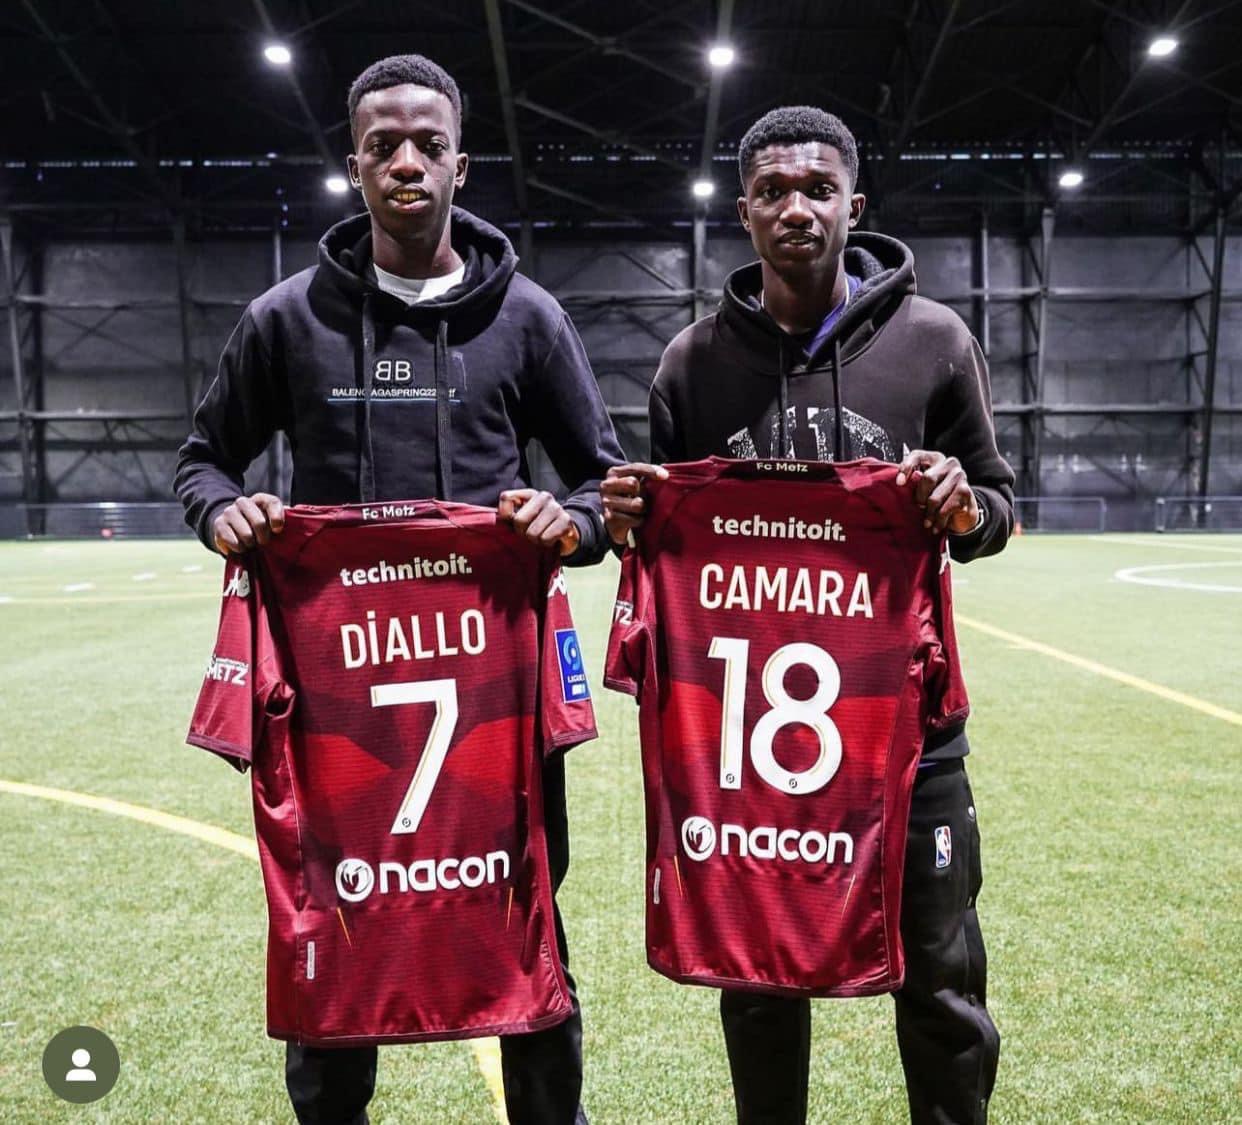 Officiel! Diallo et Camara présentés au FC Metz